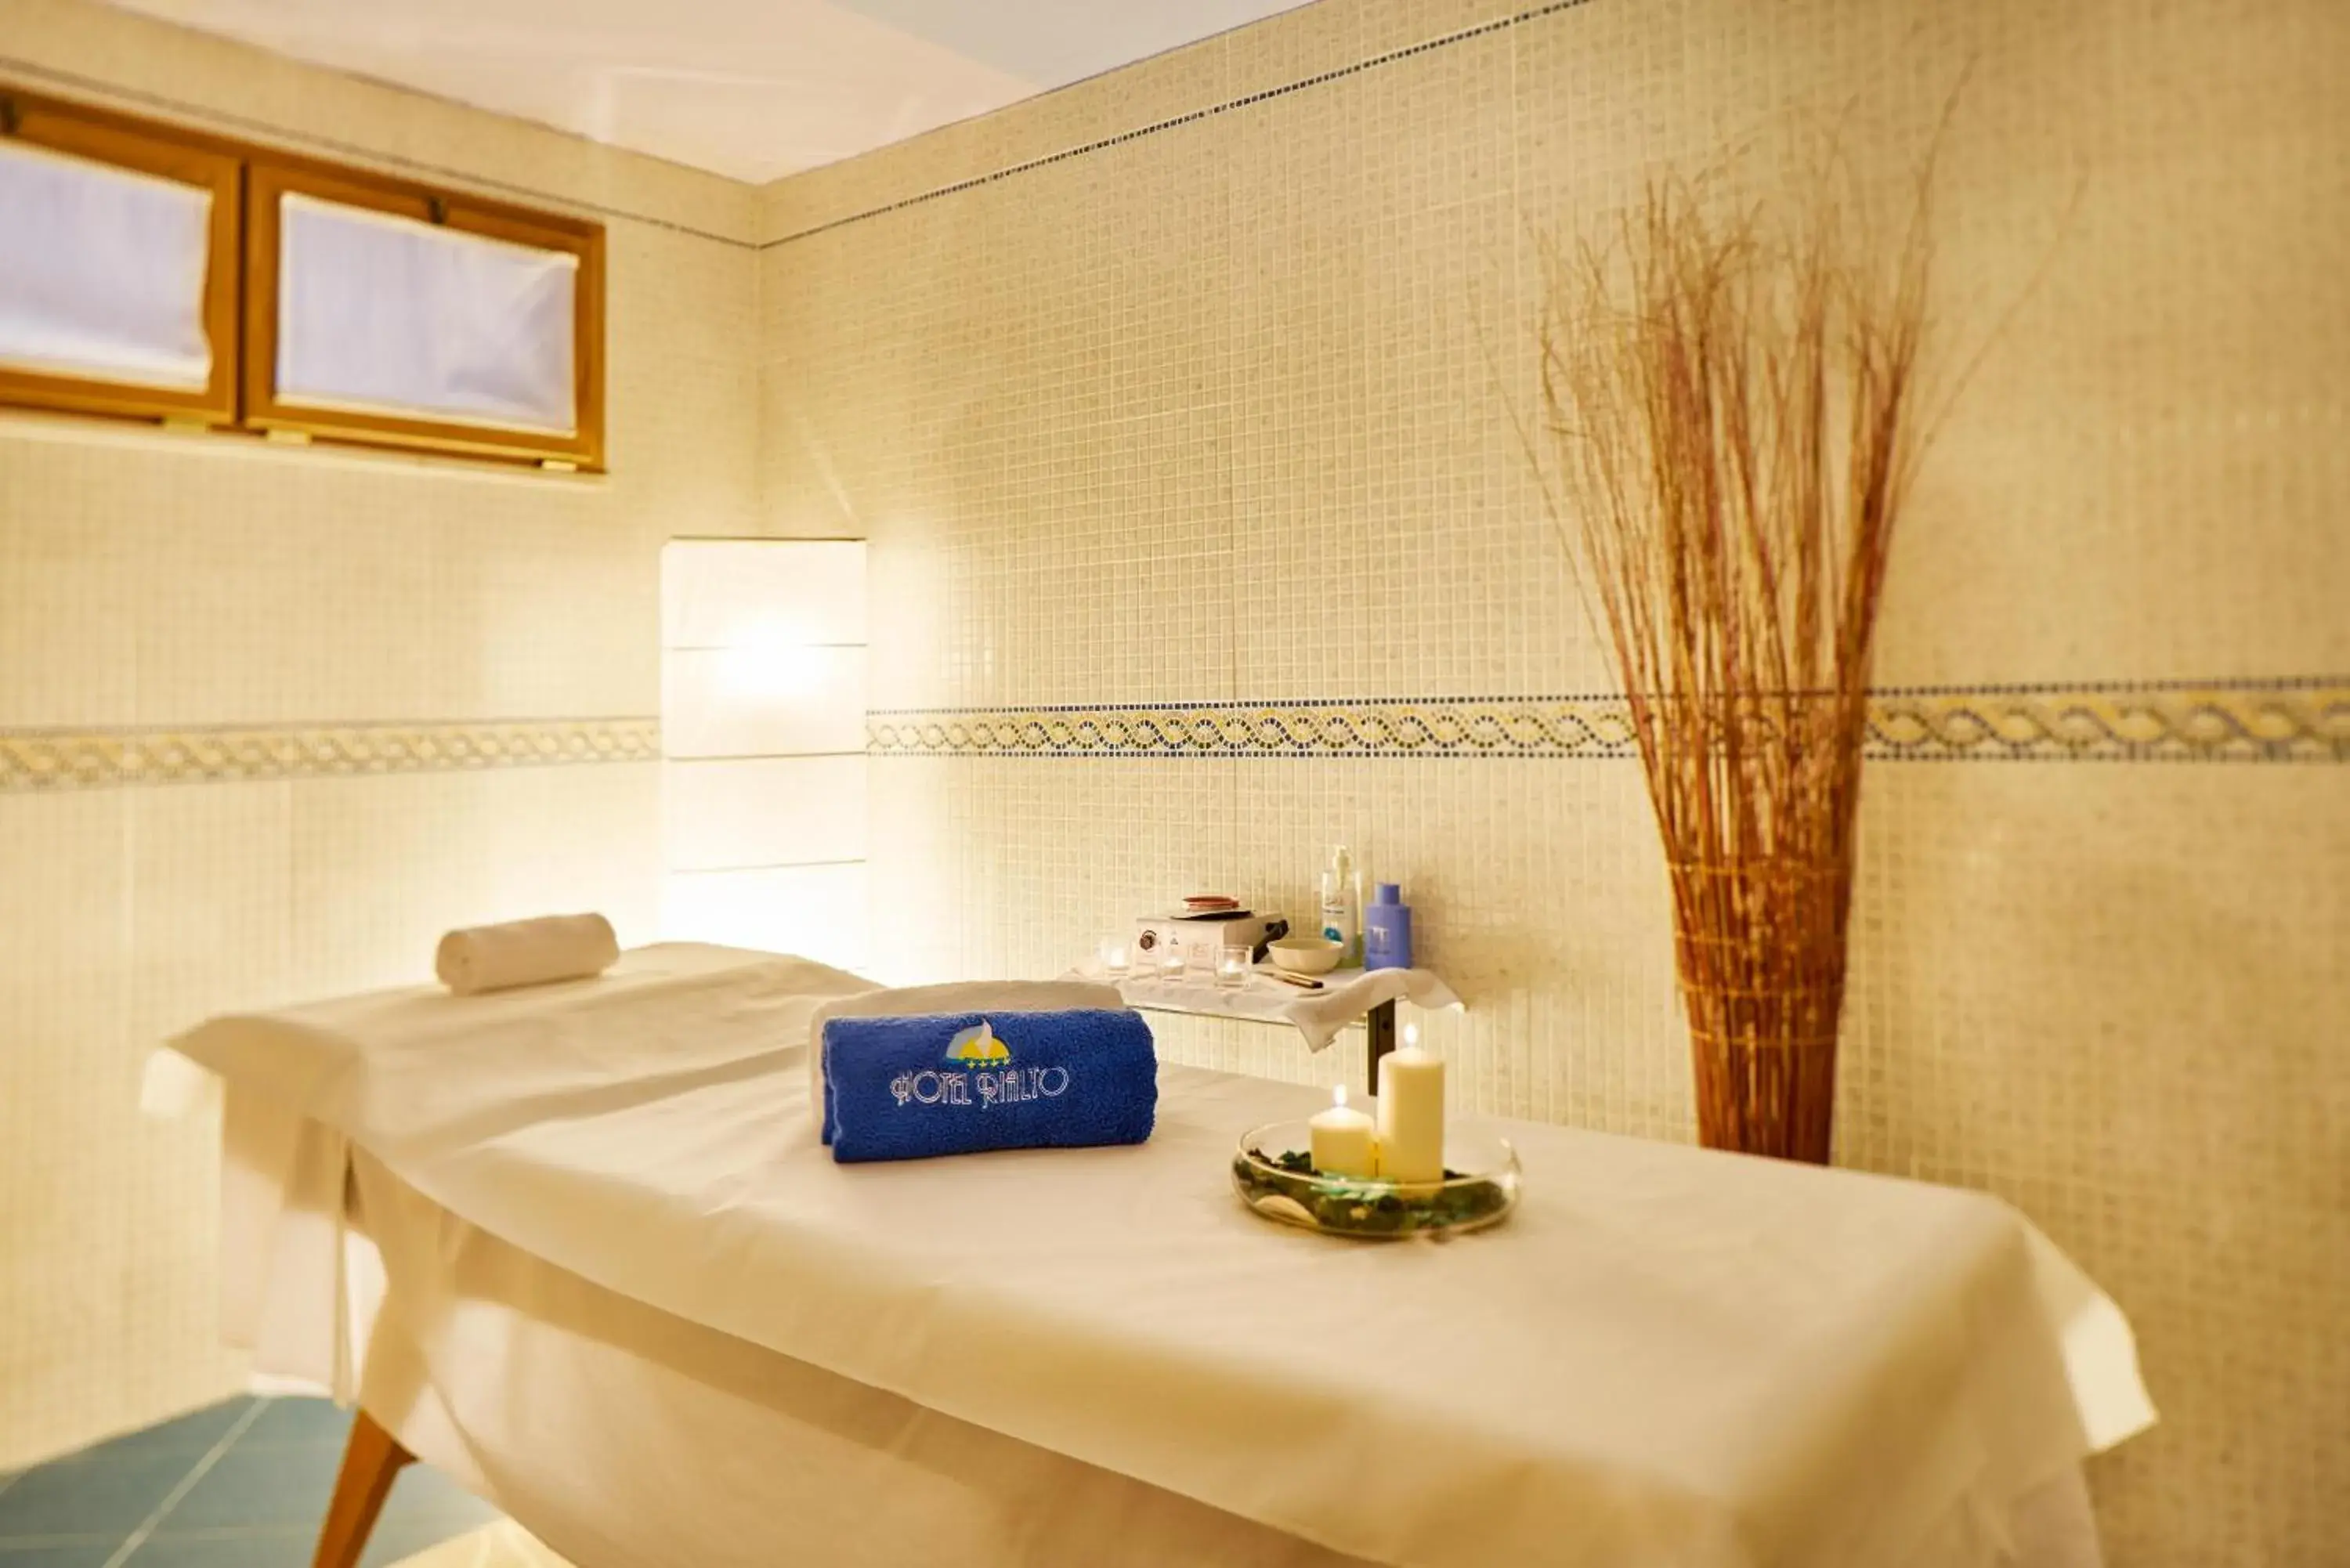 Bathroom in Hotel Rialto